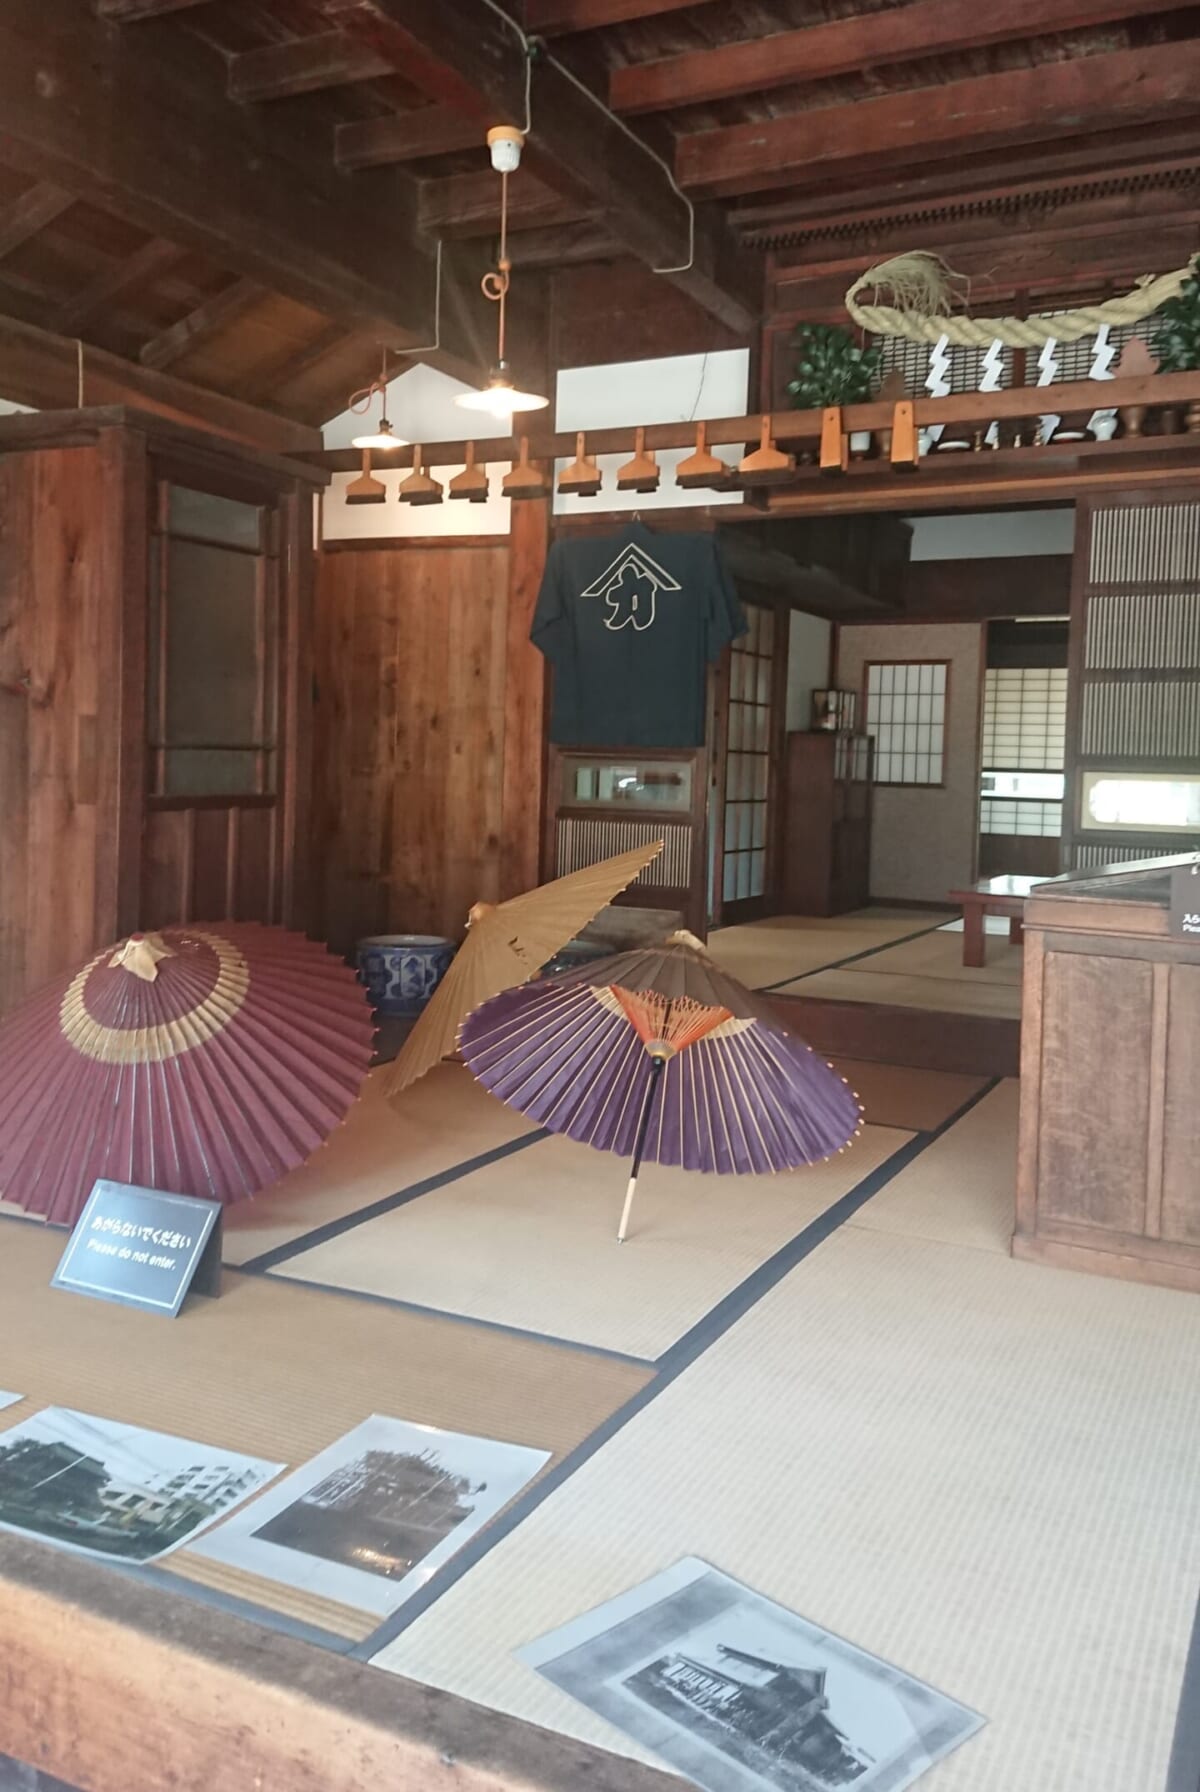 和傘問屋の川野商店。昭和時代の店内が再現されている。「外観だけでなく、店内を見ることで商いや生活の様子を感じることもできます」。